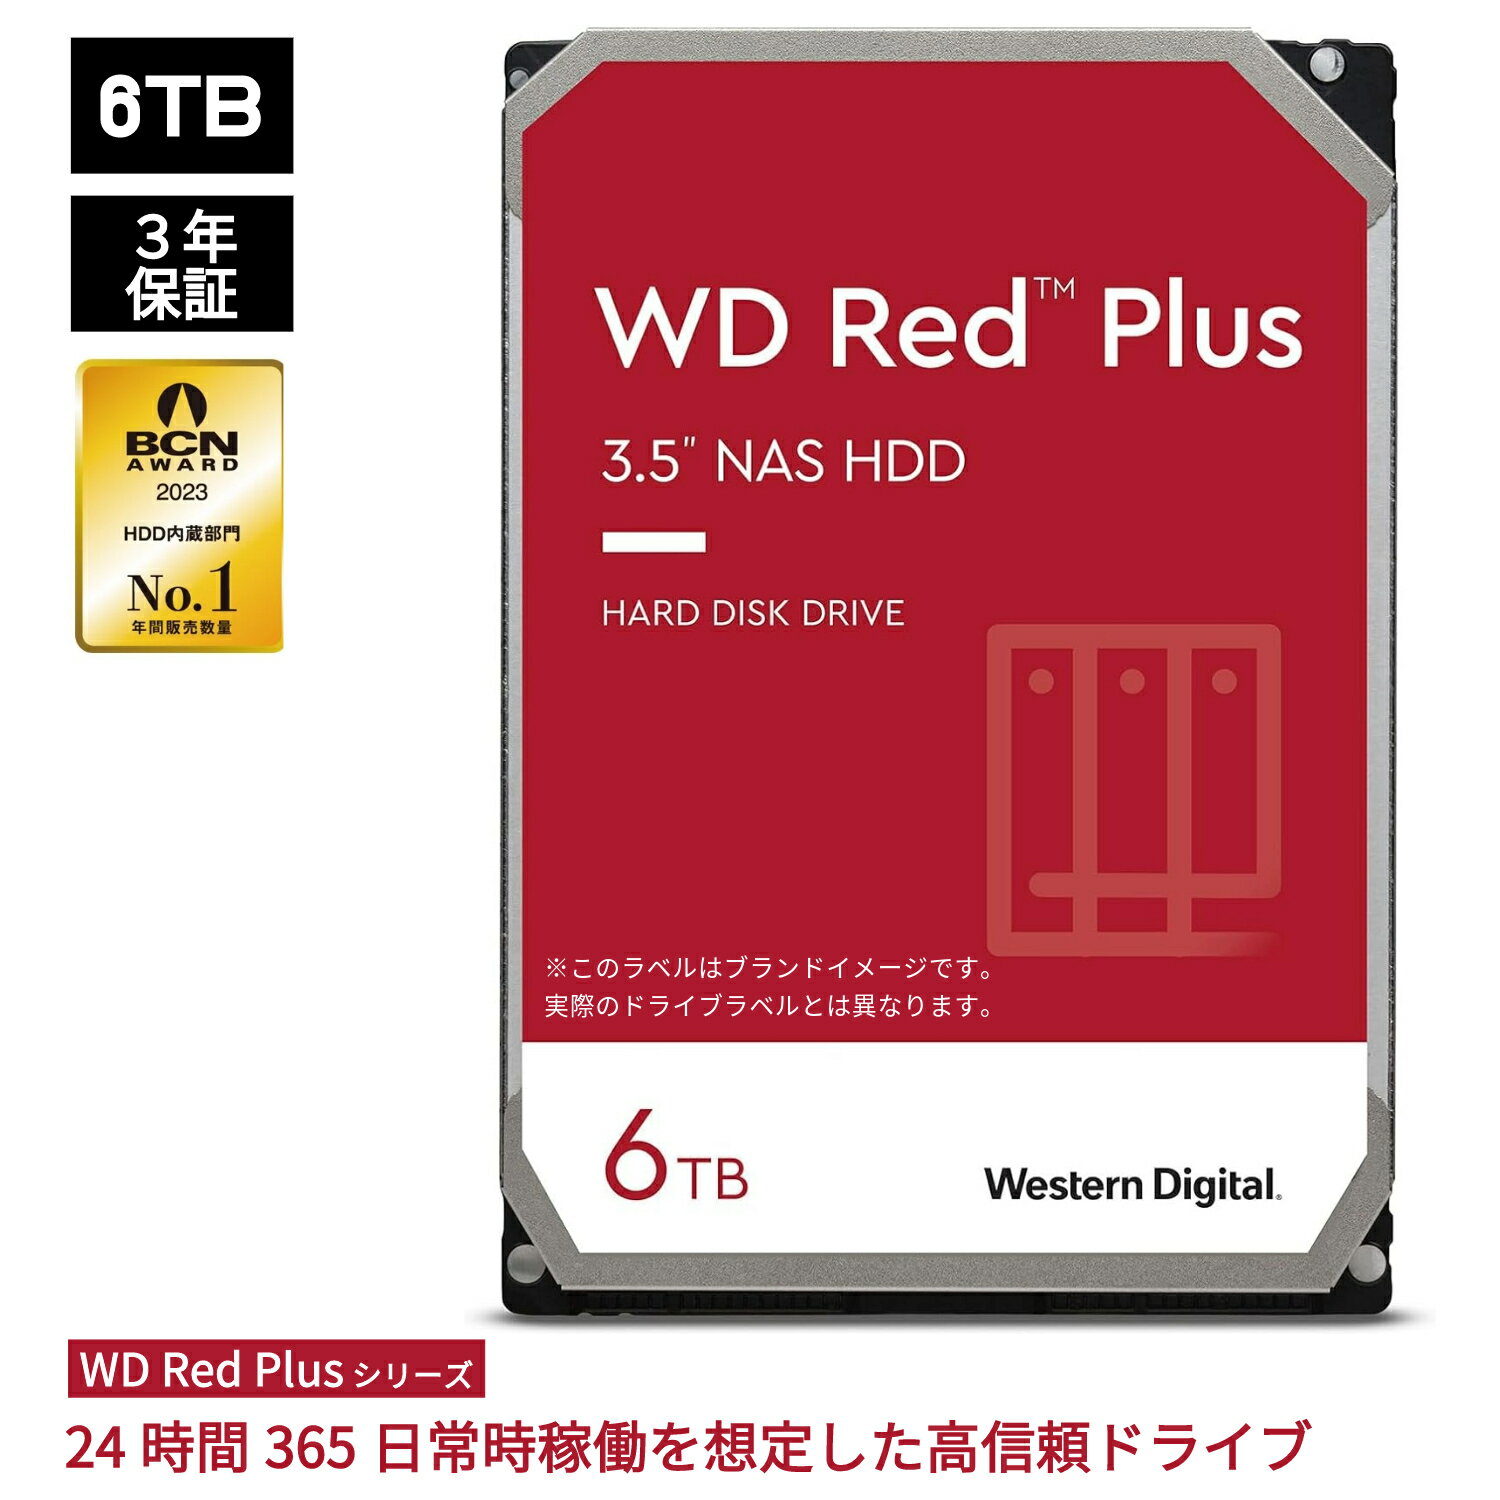 【国内正規流通品】 Western Digital ウエスタンデジタル WD Red Plus 内蔵 HDD ハードディスク 6TB CMR 3.5インチ SATA 5400rpm キャッシュ256MB NAS メーカー保証3年 WD60EFPX | 内蔵hdd バックアップ 用 パソコン ハードディスクドライブ ec 大容量 省電力 PCパーツ